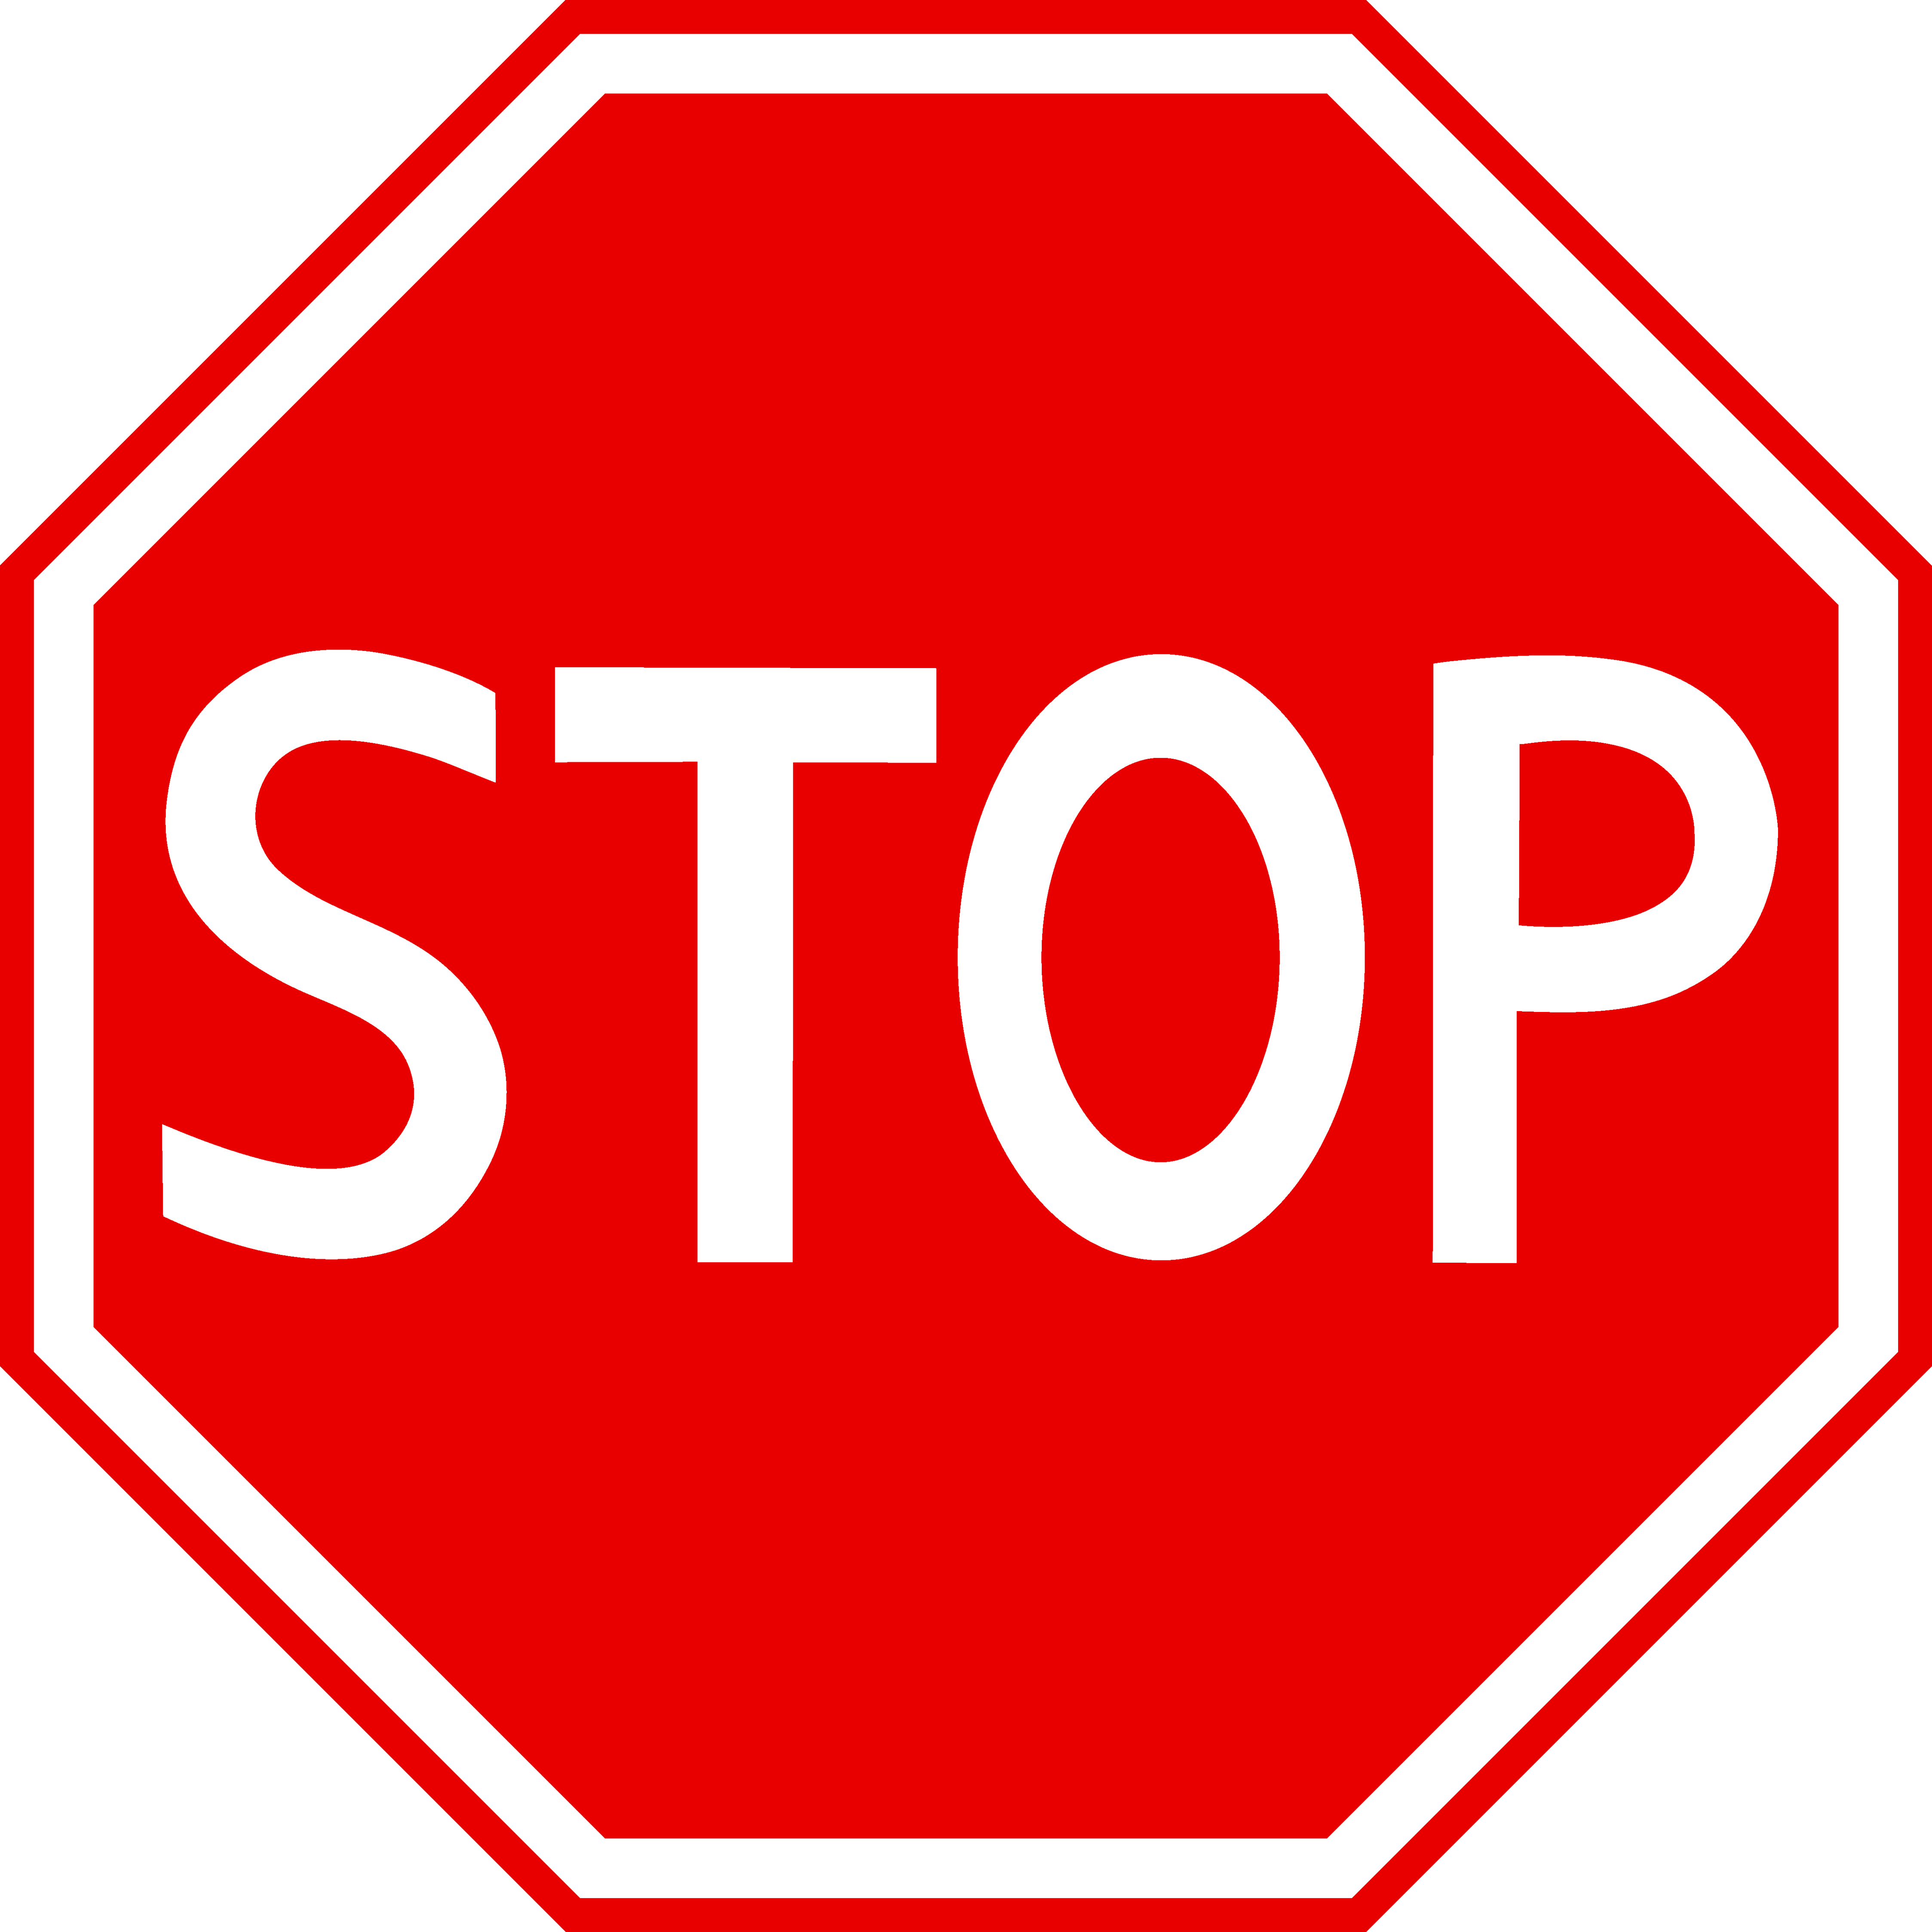 Www stops. Стоп. Знак stop. Знак стоп на светофоре. Знак стоп на черном фоне.